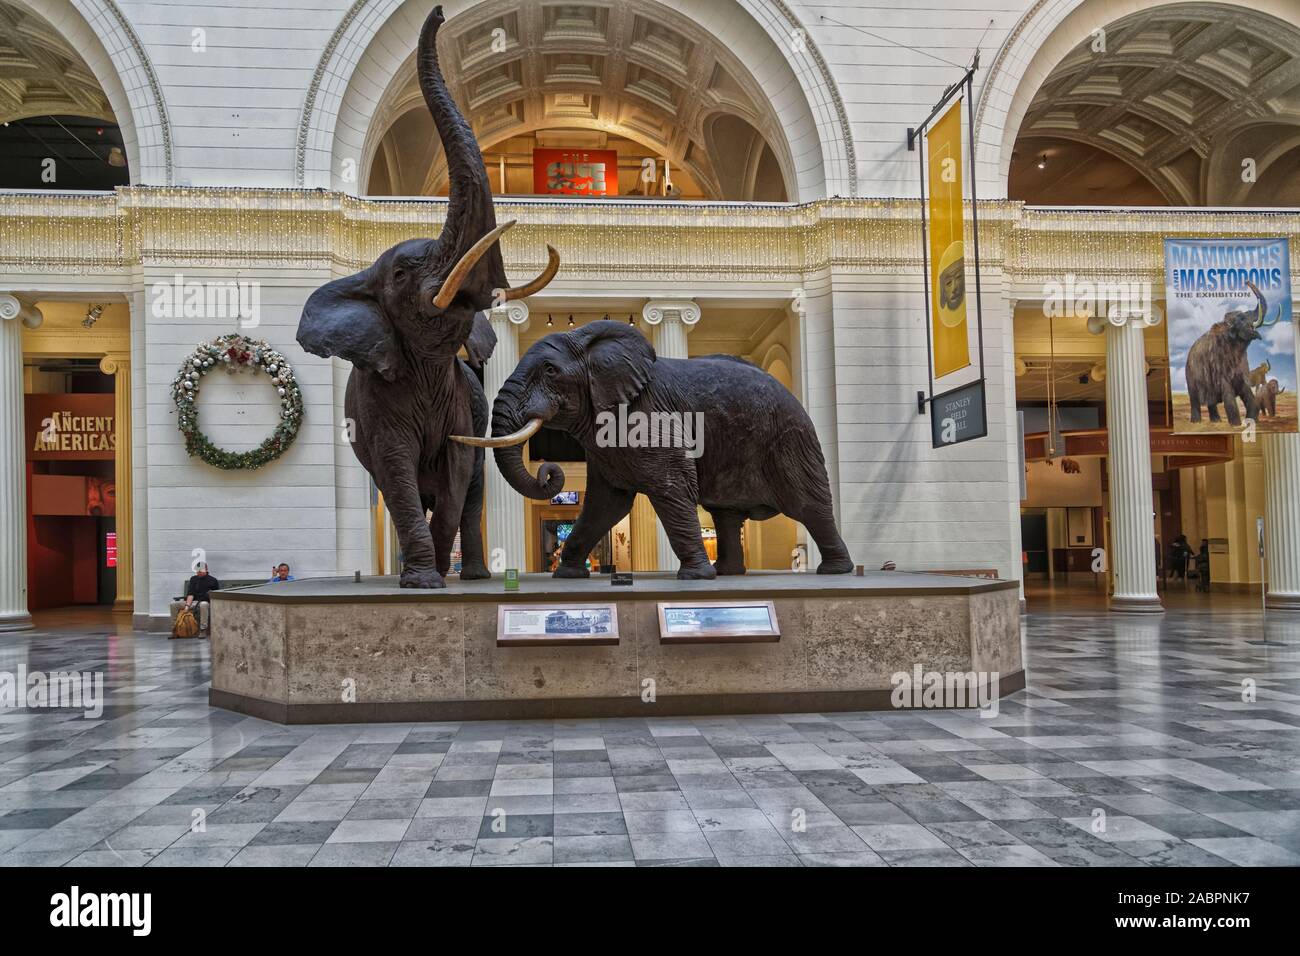 Mostra di elefanti presso la sala principale del Field Museum of Natural History nella vista interna di Chicago Foto Stock